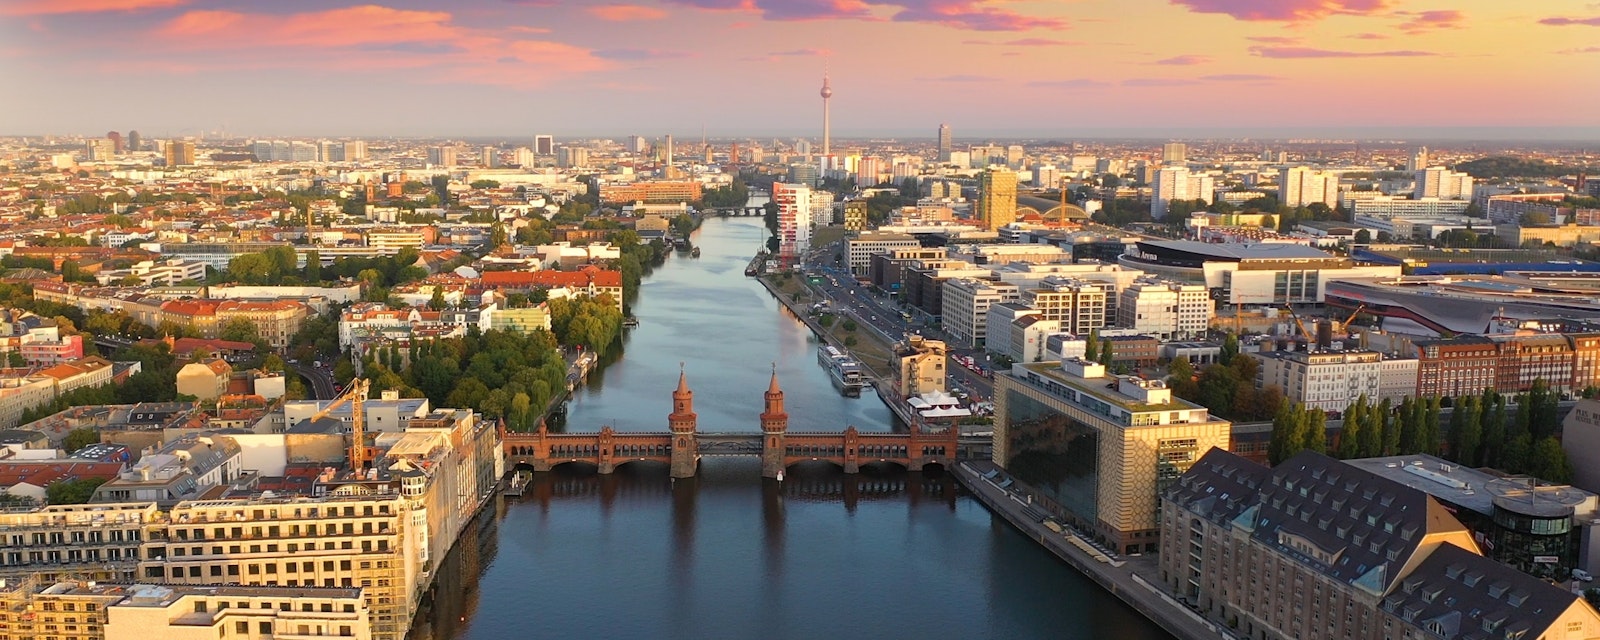 Berlin,Brandenburg,Skyline,Aerial,View,Birds,View,,Belrin,River,Bridge